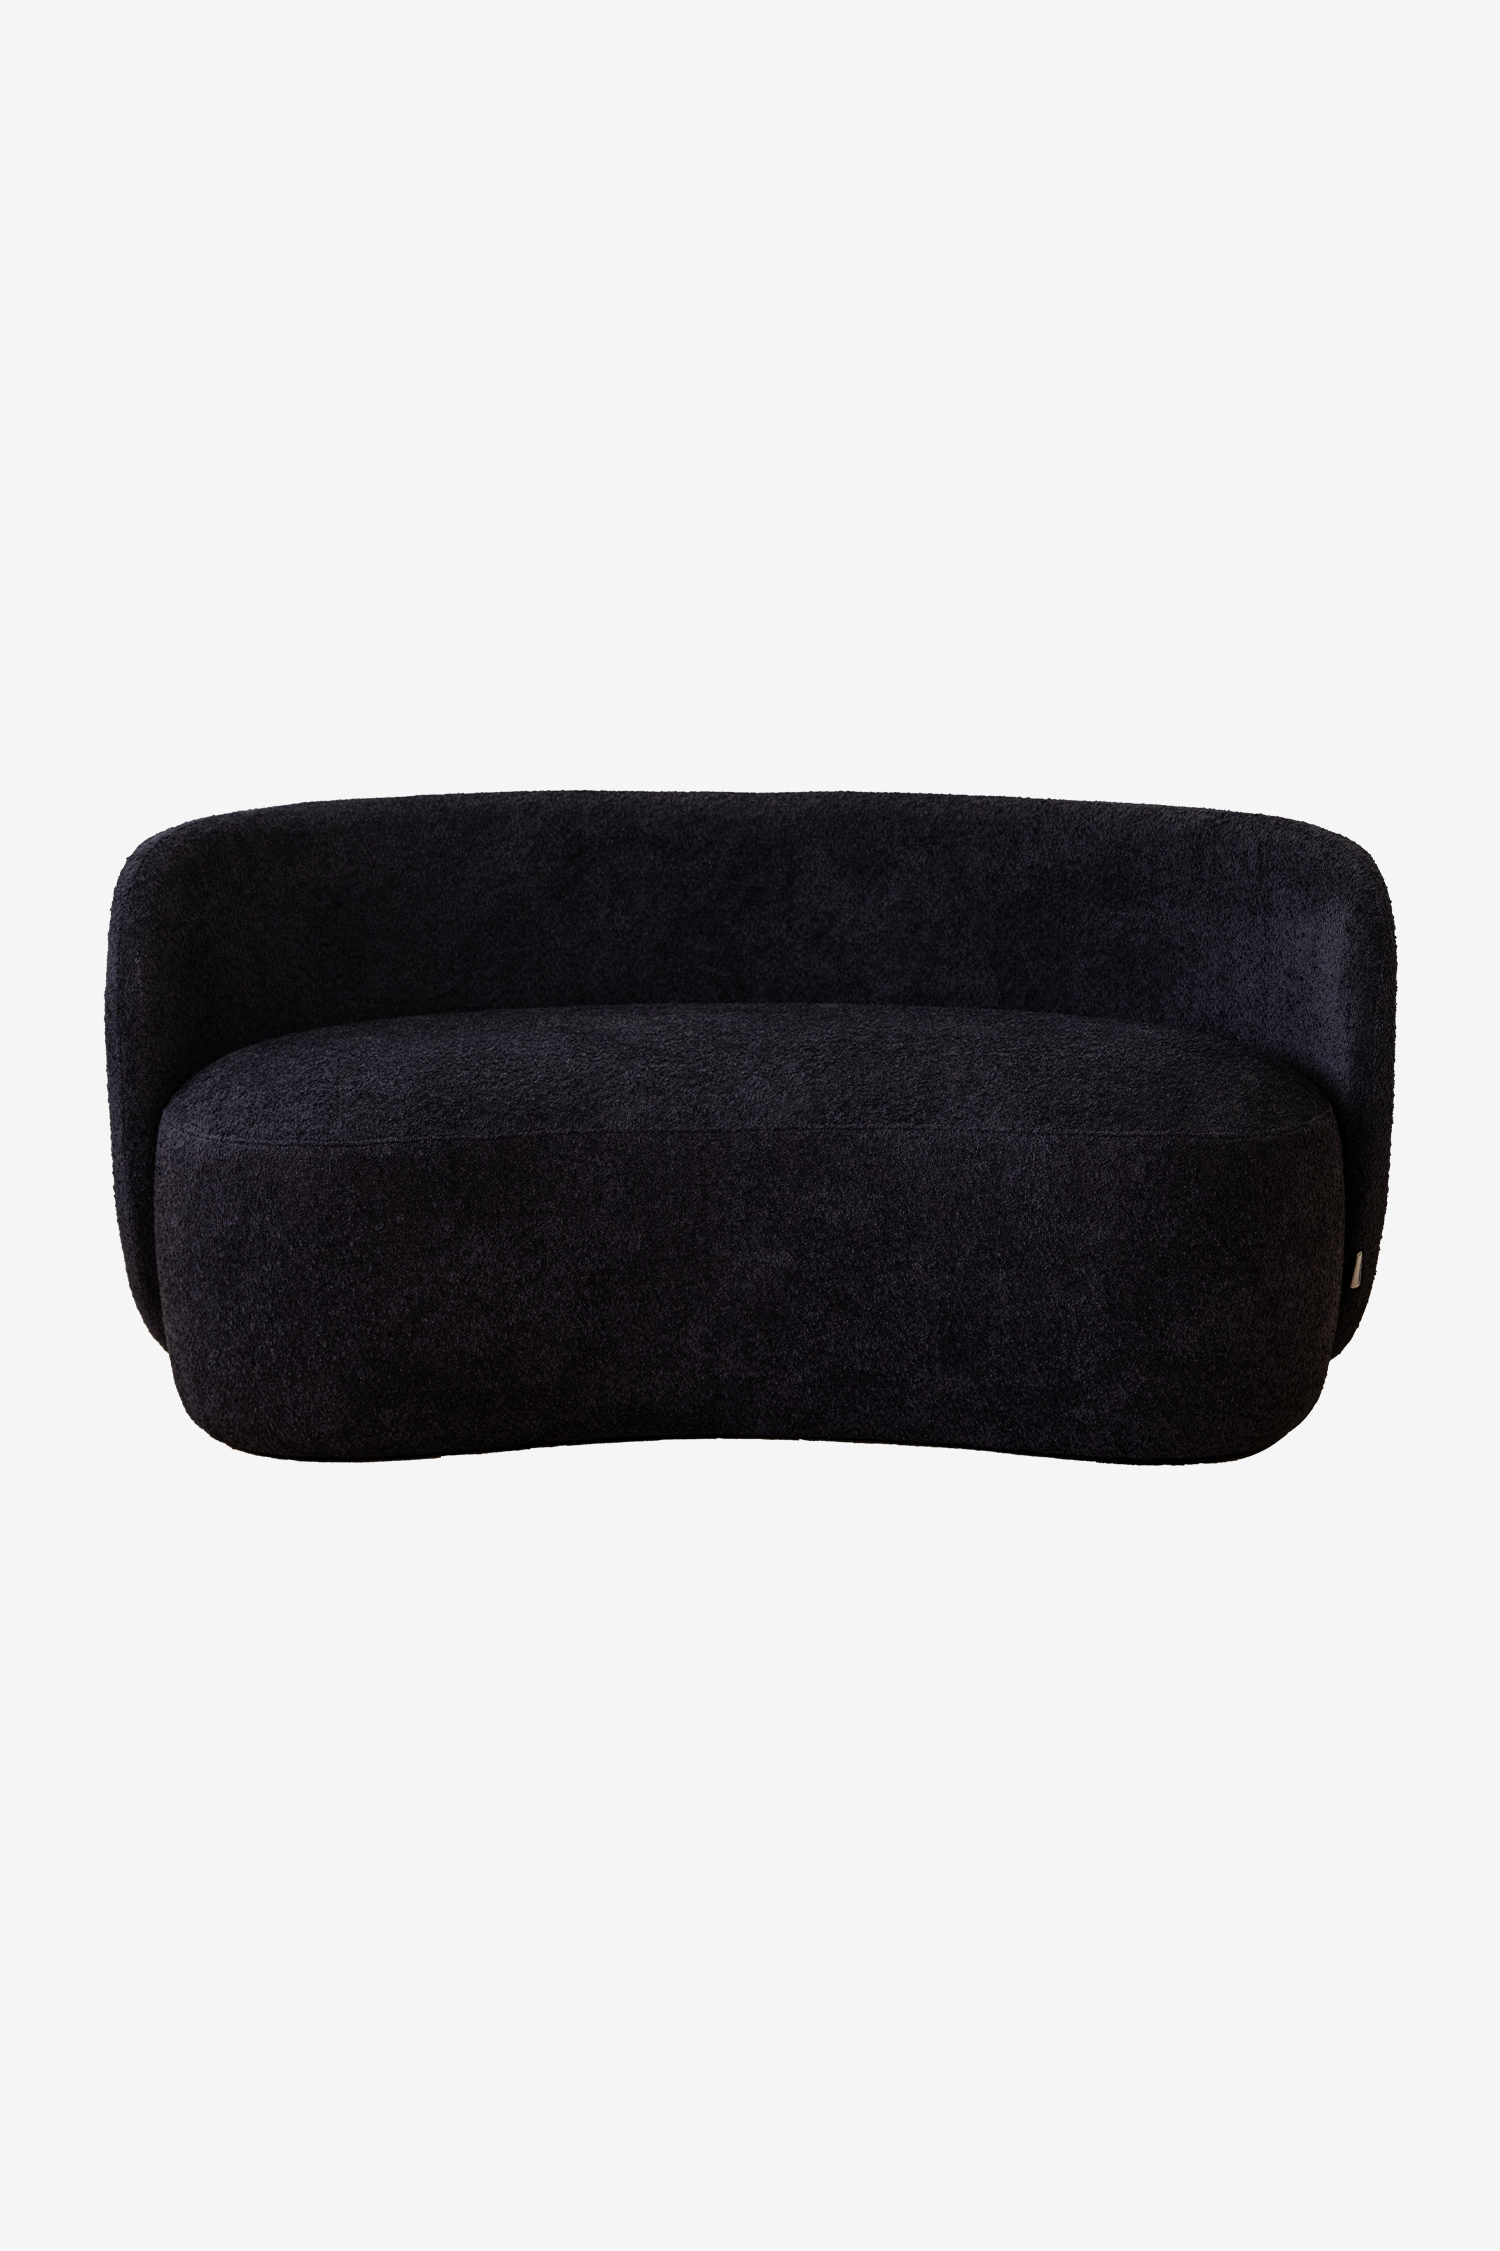 Clam 2 Seater Sofa - Black